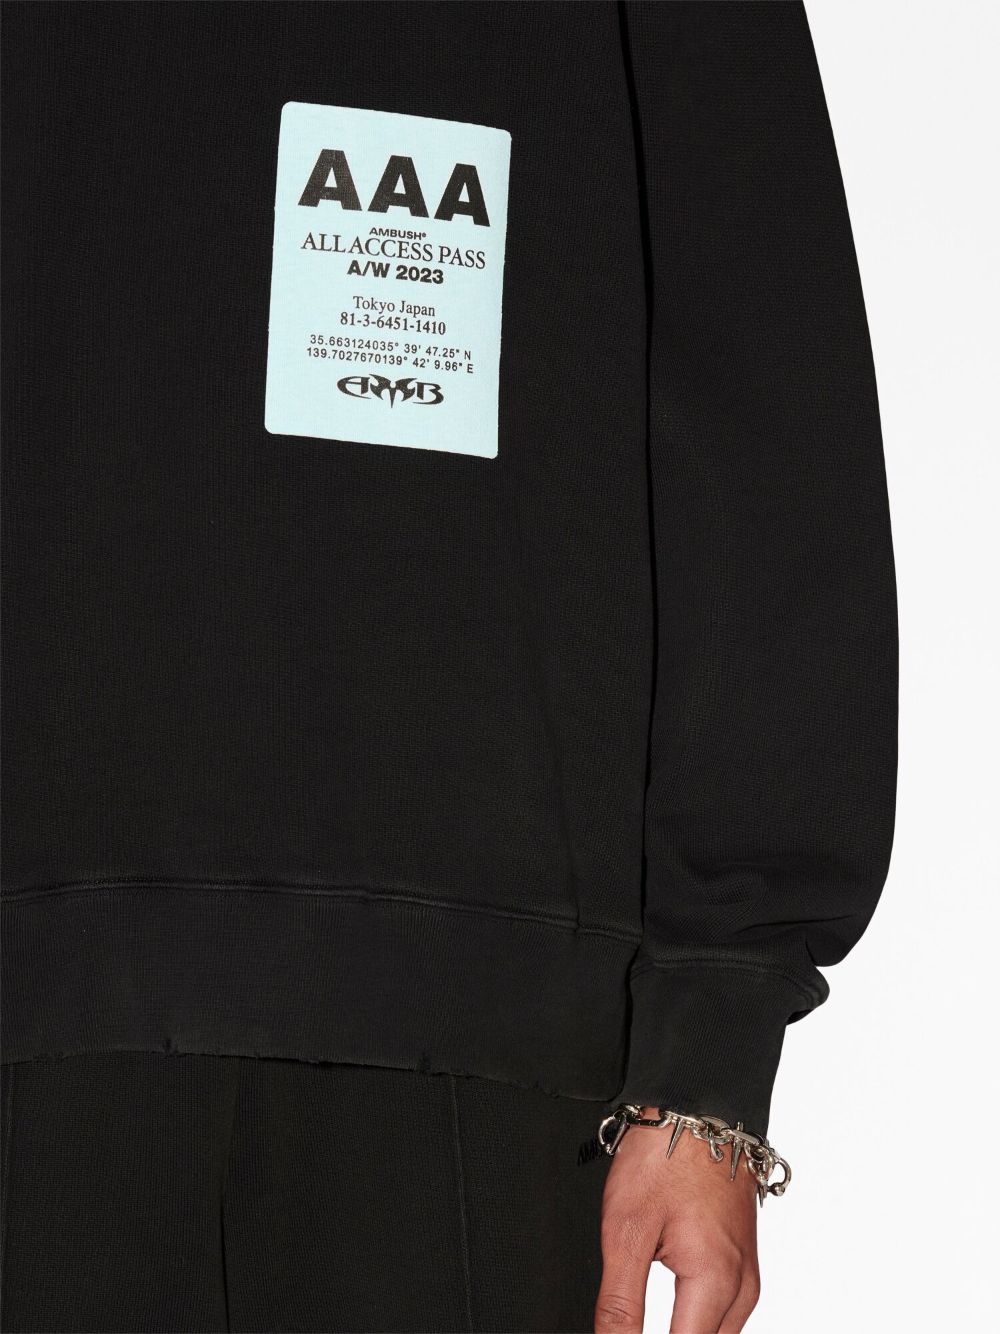 black pass graphic sweatshirt